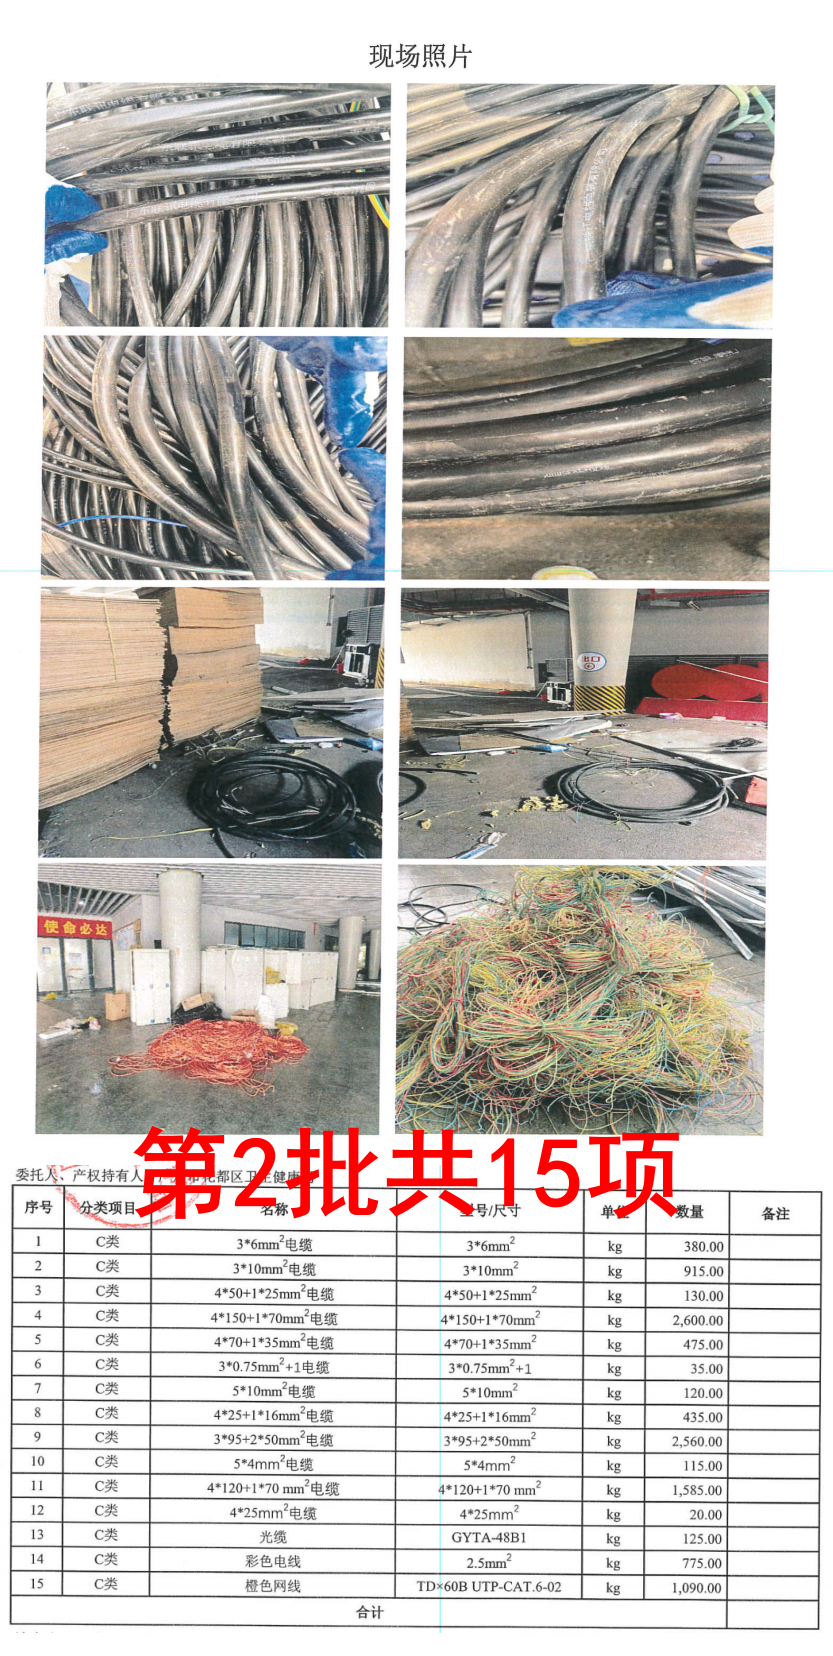 标的1：广州花都东风方舱医院拆除物资一批（共计129项）网络拍卖公告